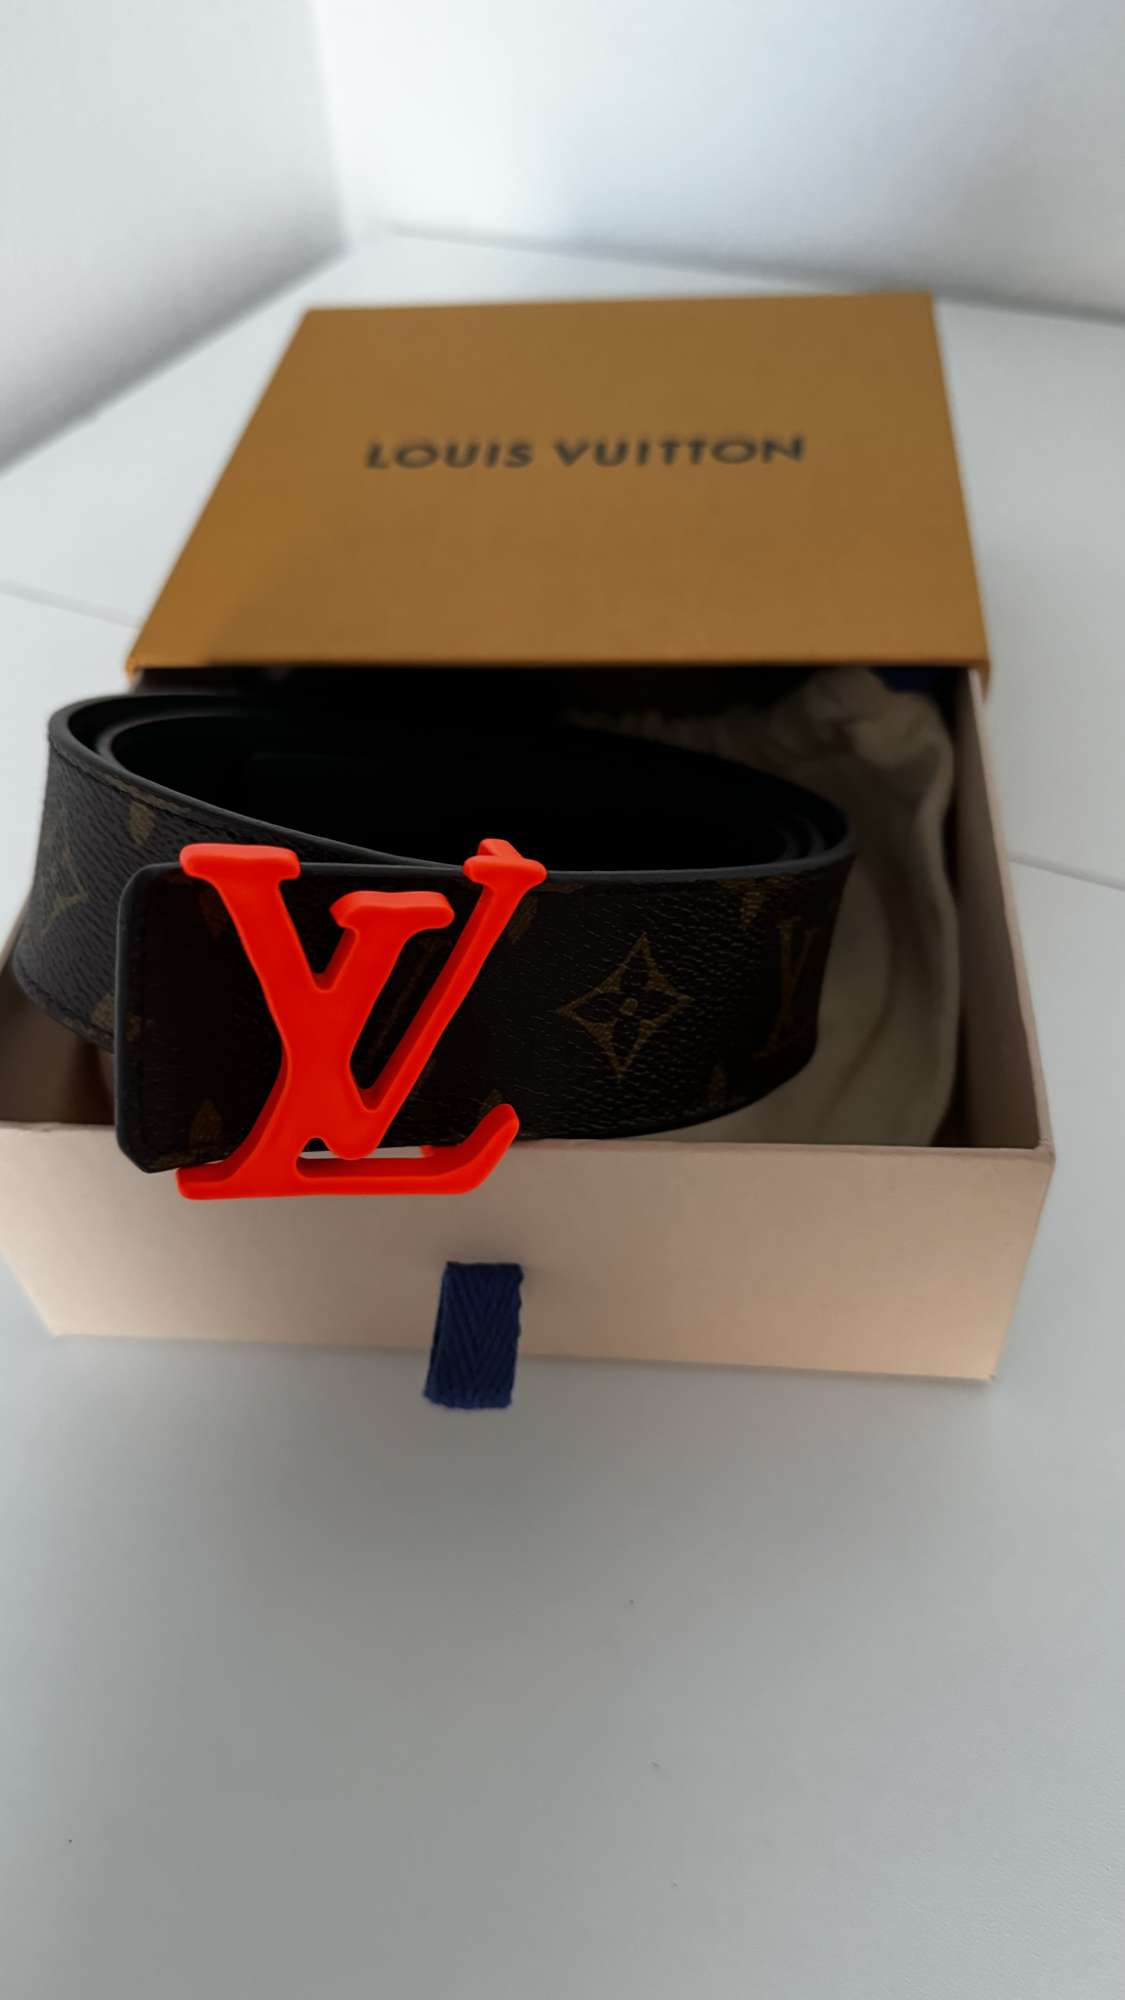 Louis Vuitton Virgil Abloh belt